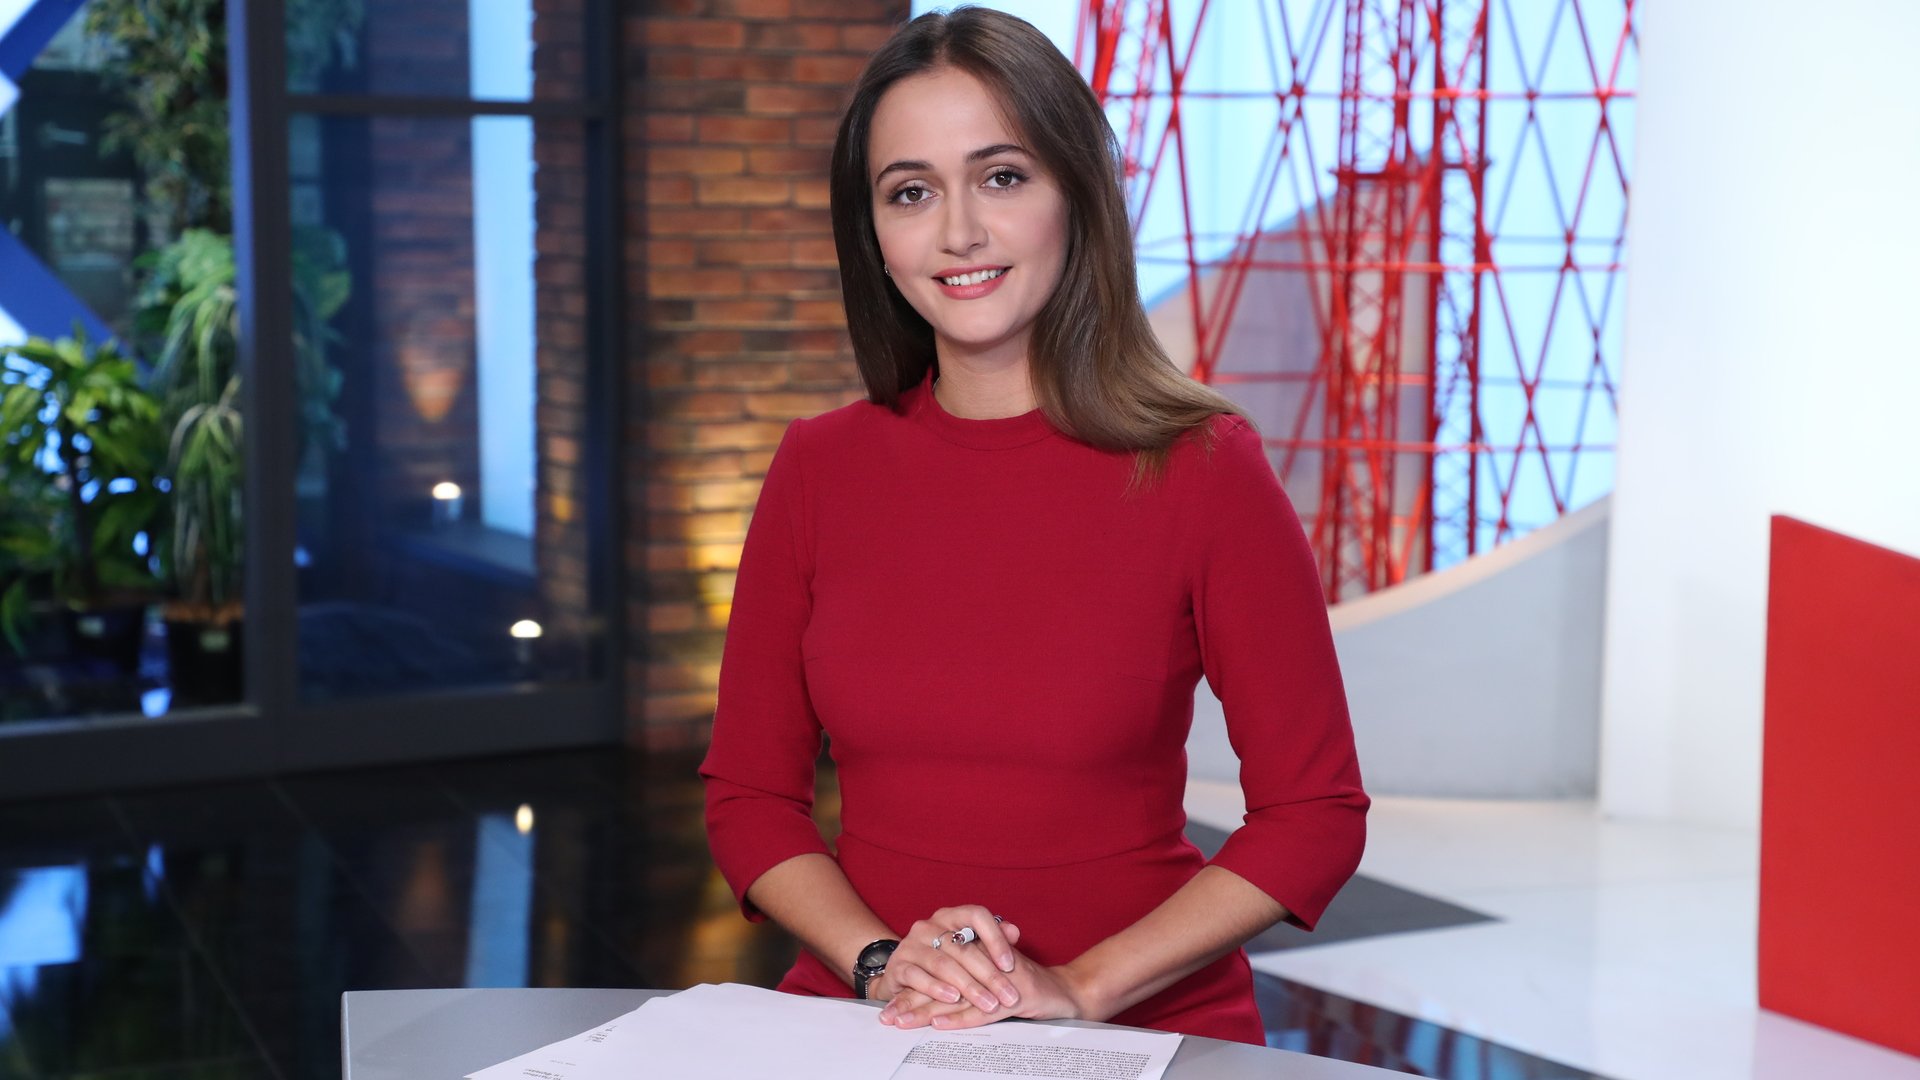 Новости российского телевидения